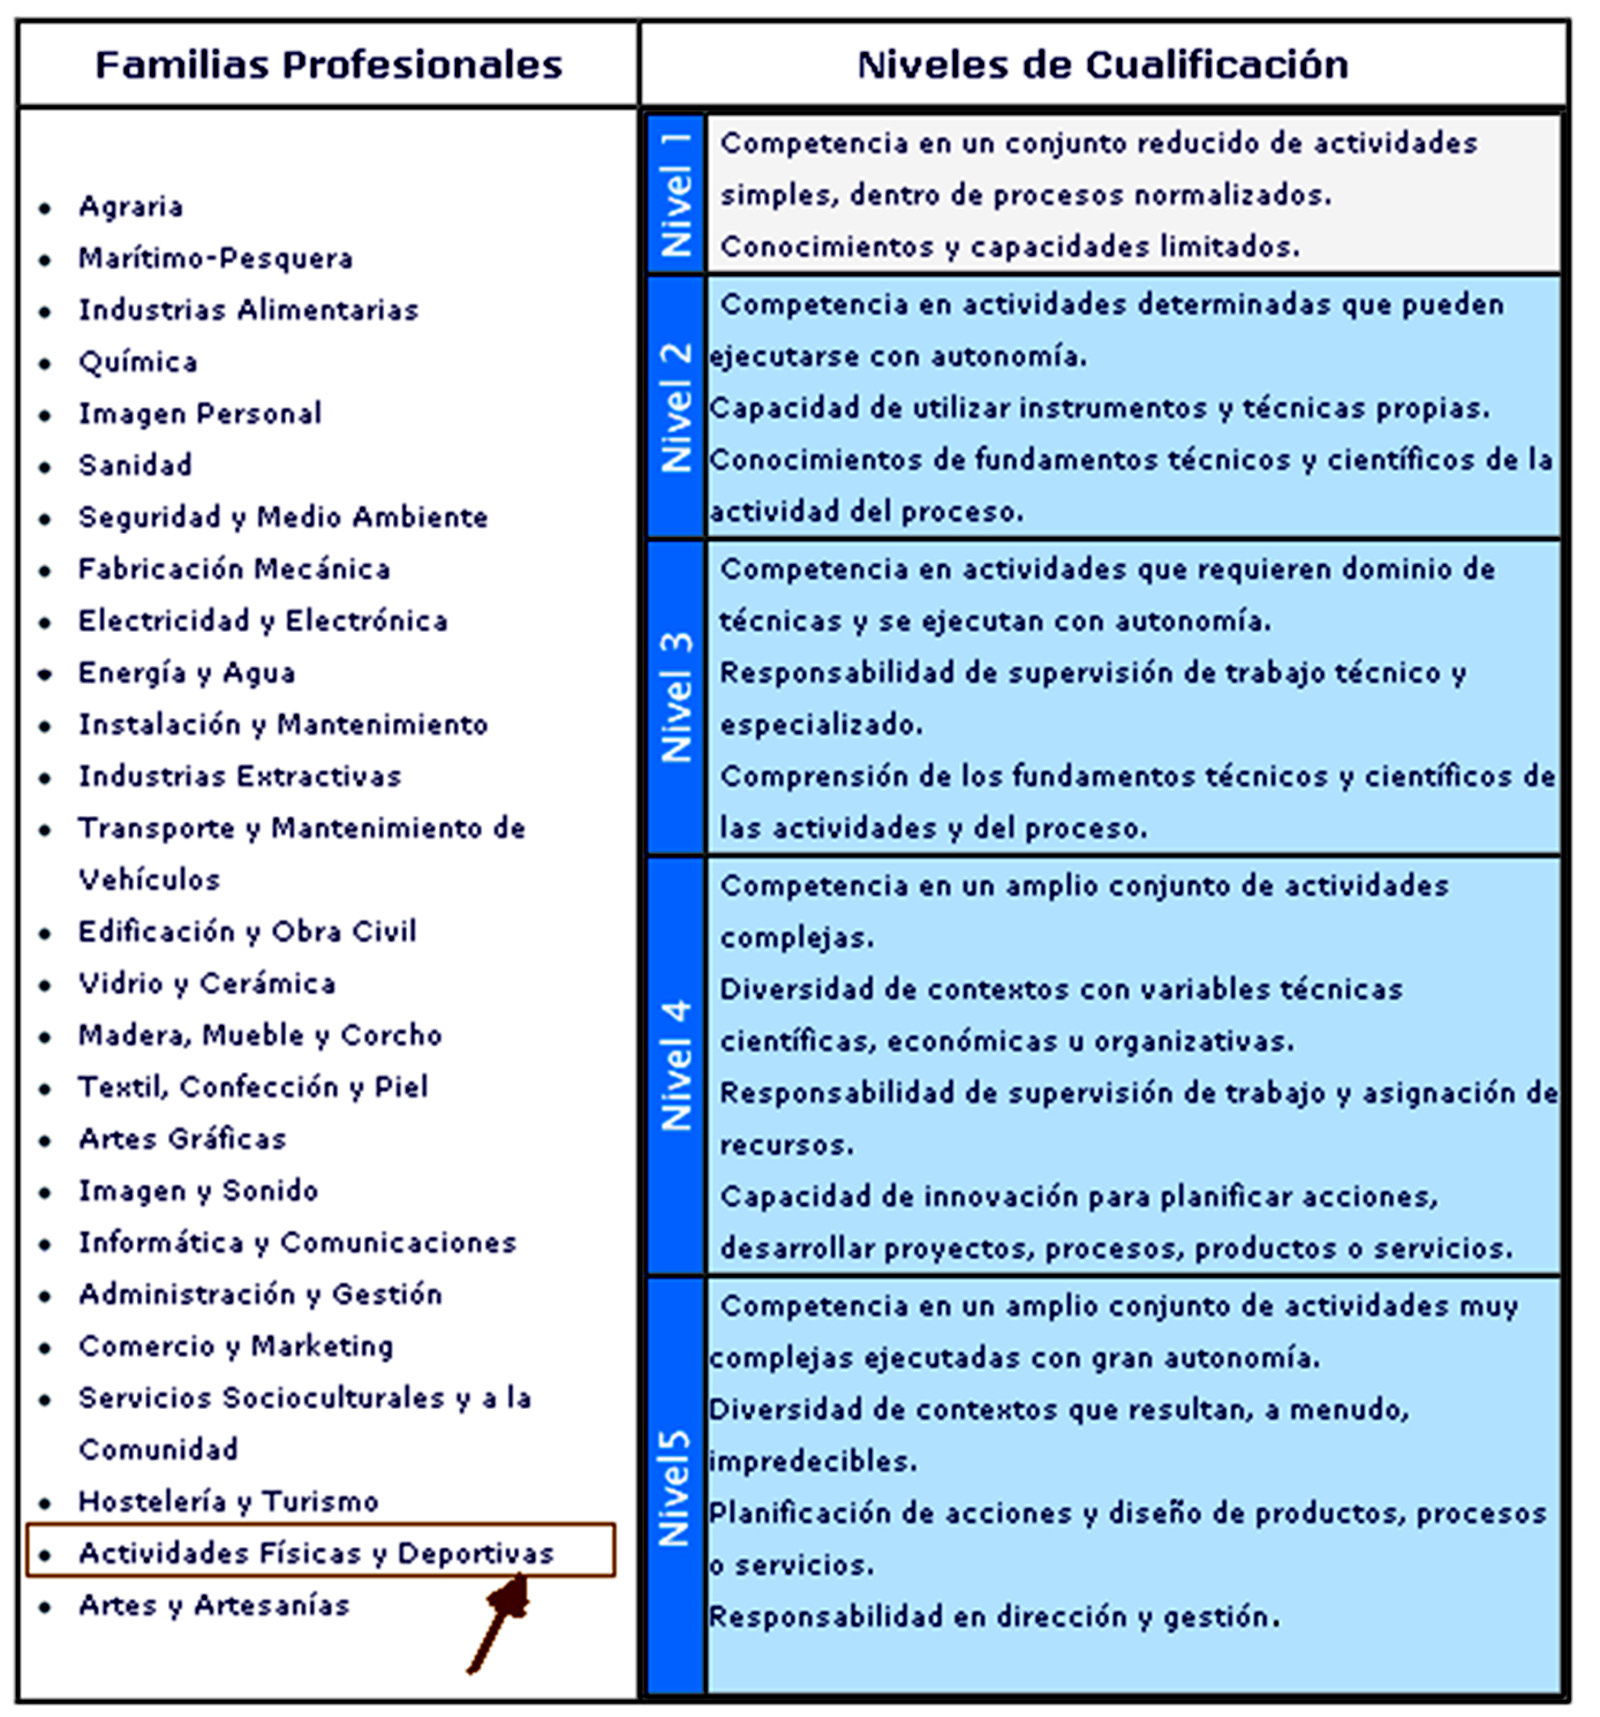 Mª PILAR LÓPEZ MERCADER Figura 1: Familias profesionales y niveles de comunicación Fuente: http://www.educacion.gob.